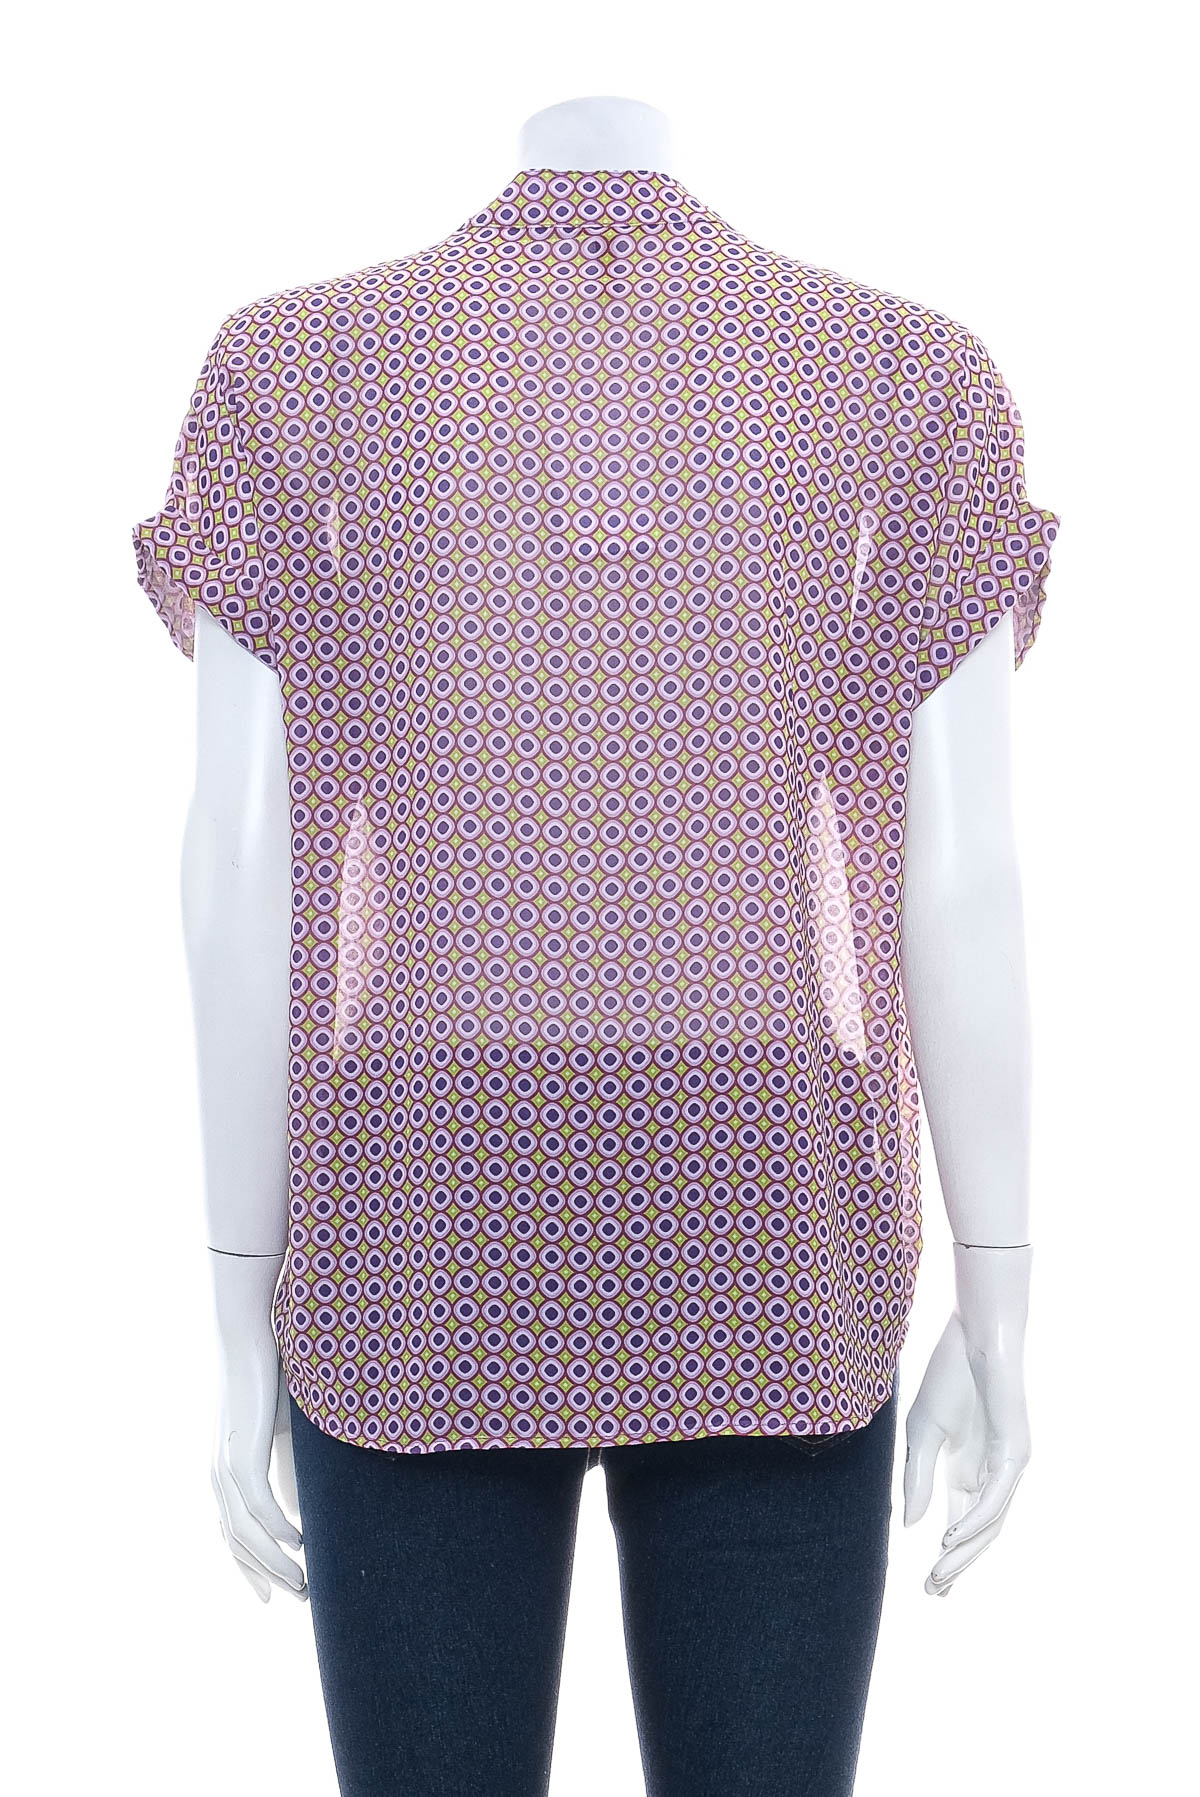 Γυναικείо πουκάμισο - New Collection - 1